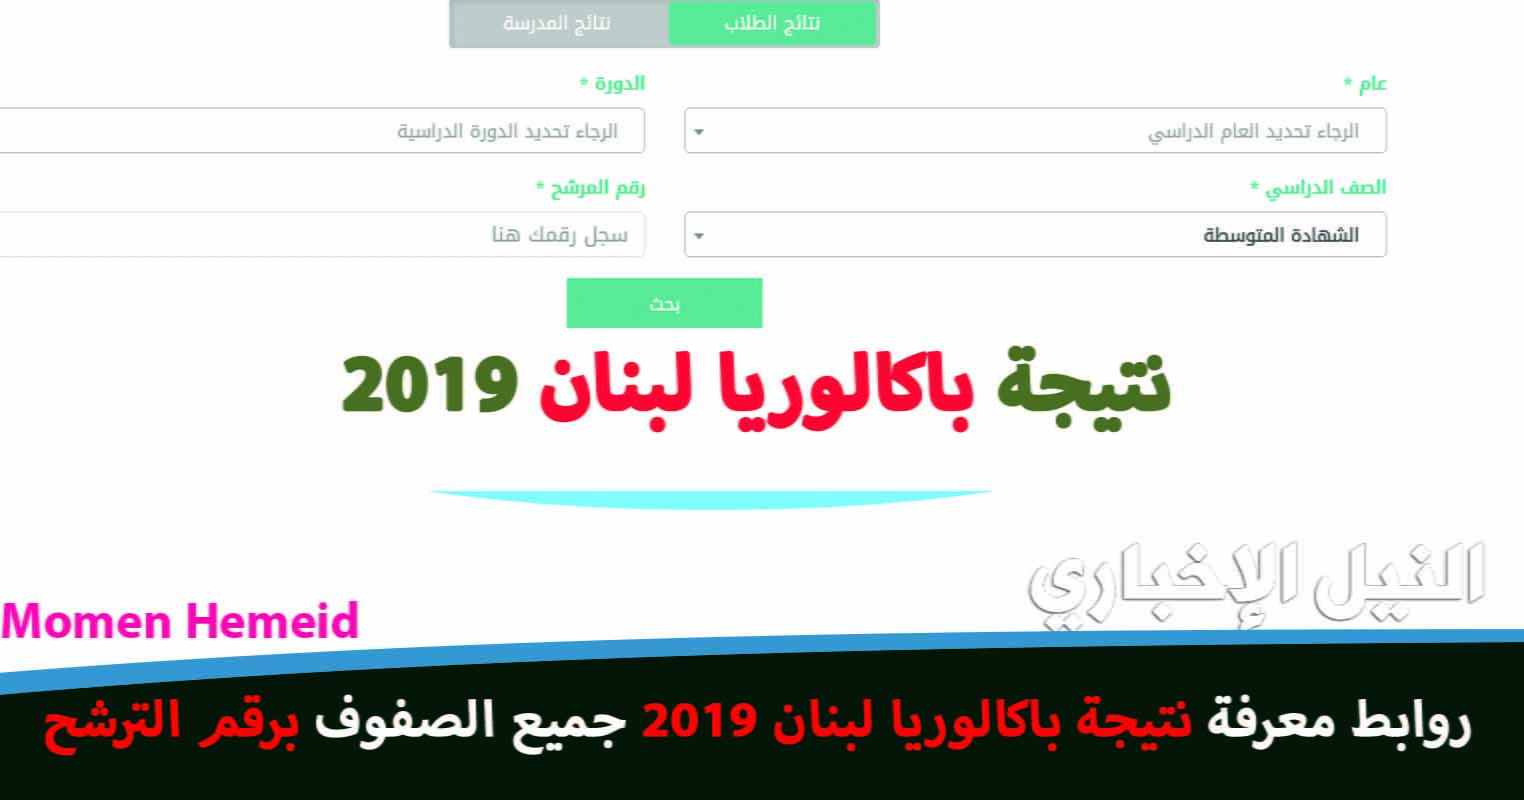 نتائج بكالوريا لبنان 2019 mehe.gov نتيجة الدورة العادية برقم المرشح نتيجة البريفية